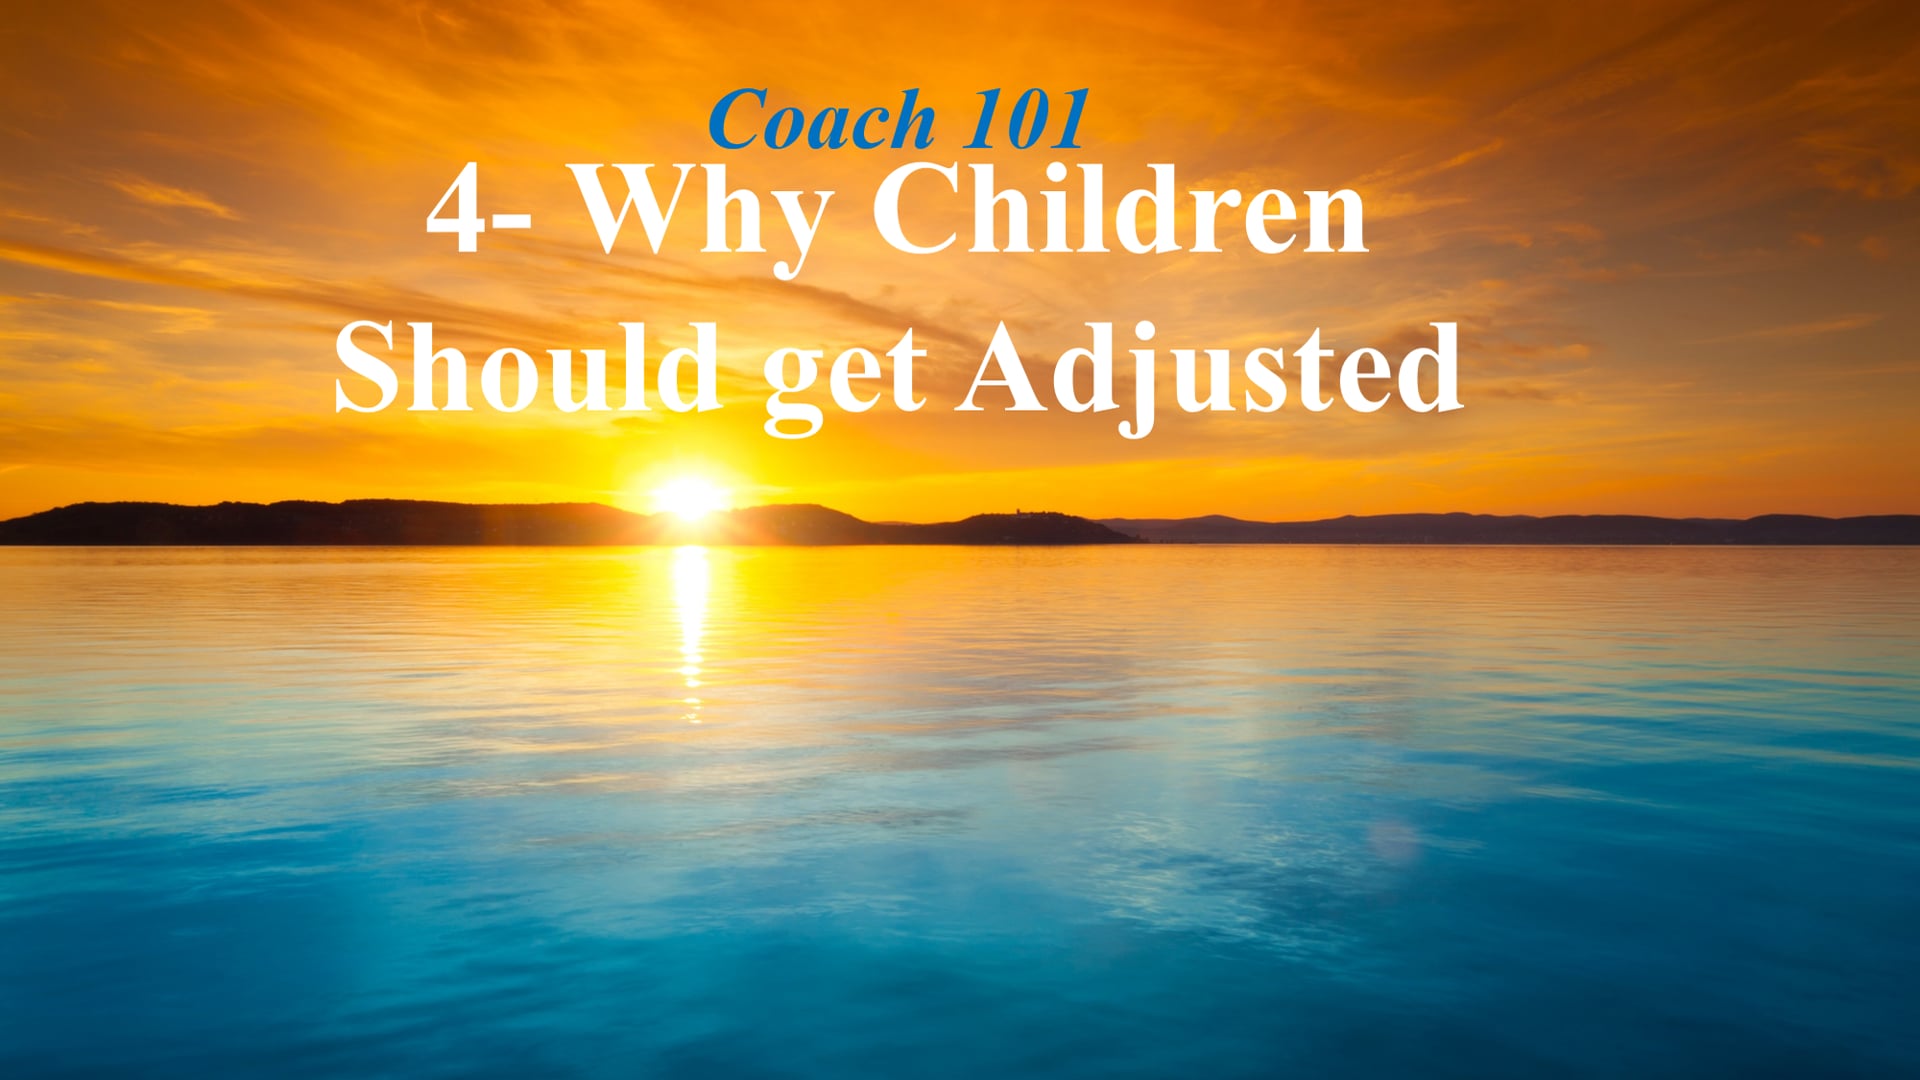 4- Why Children Should Get Adjusted